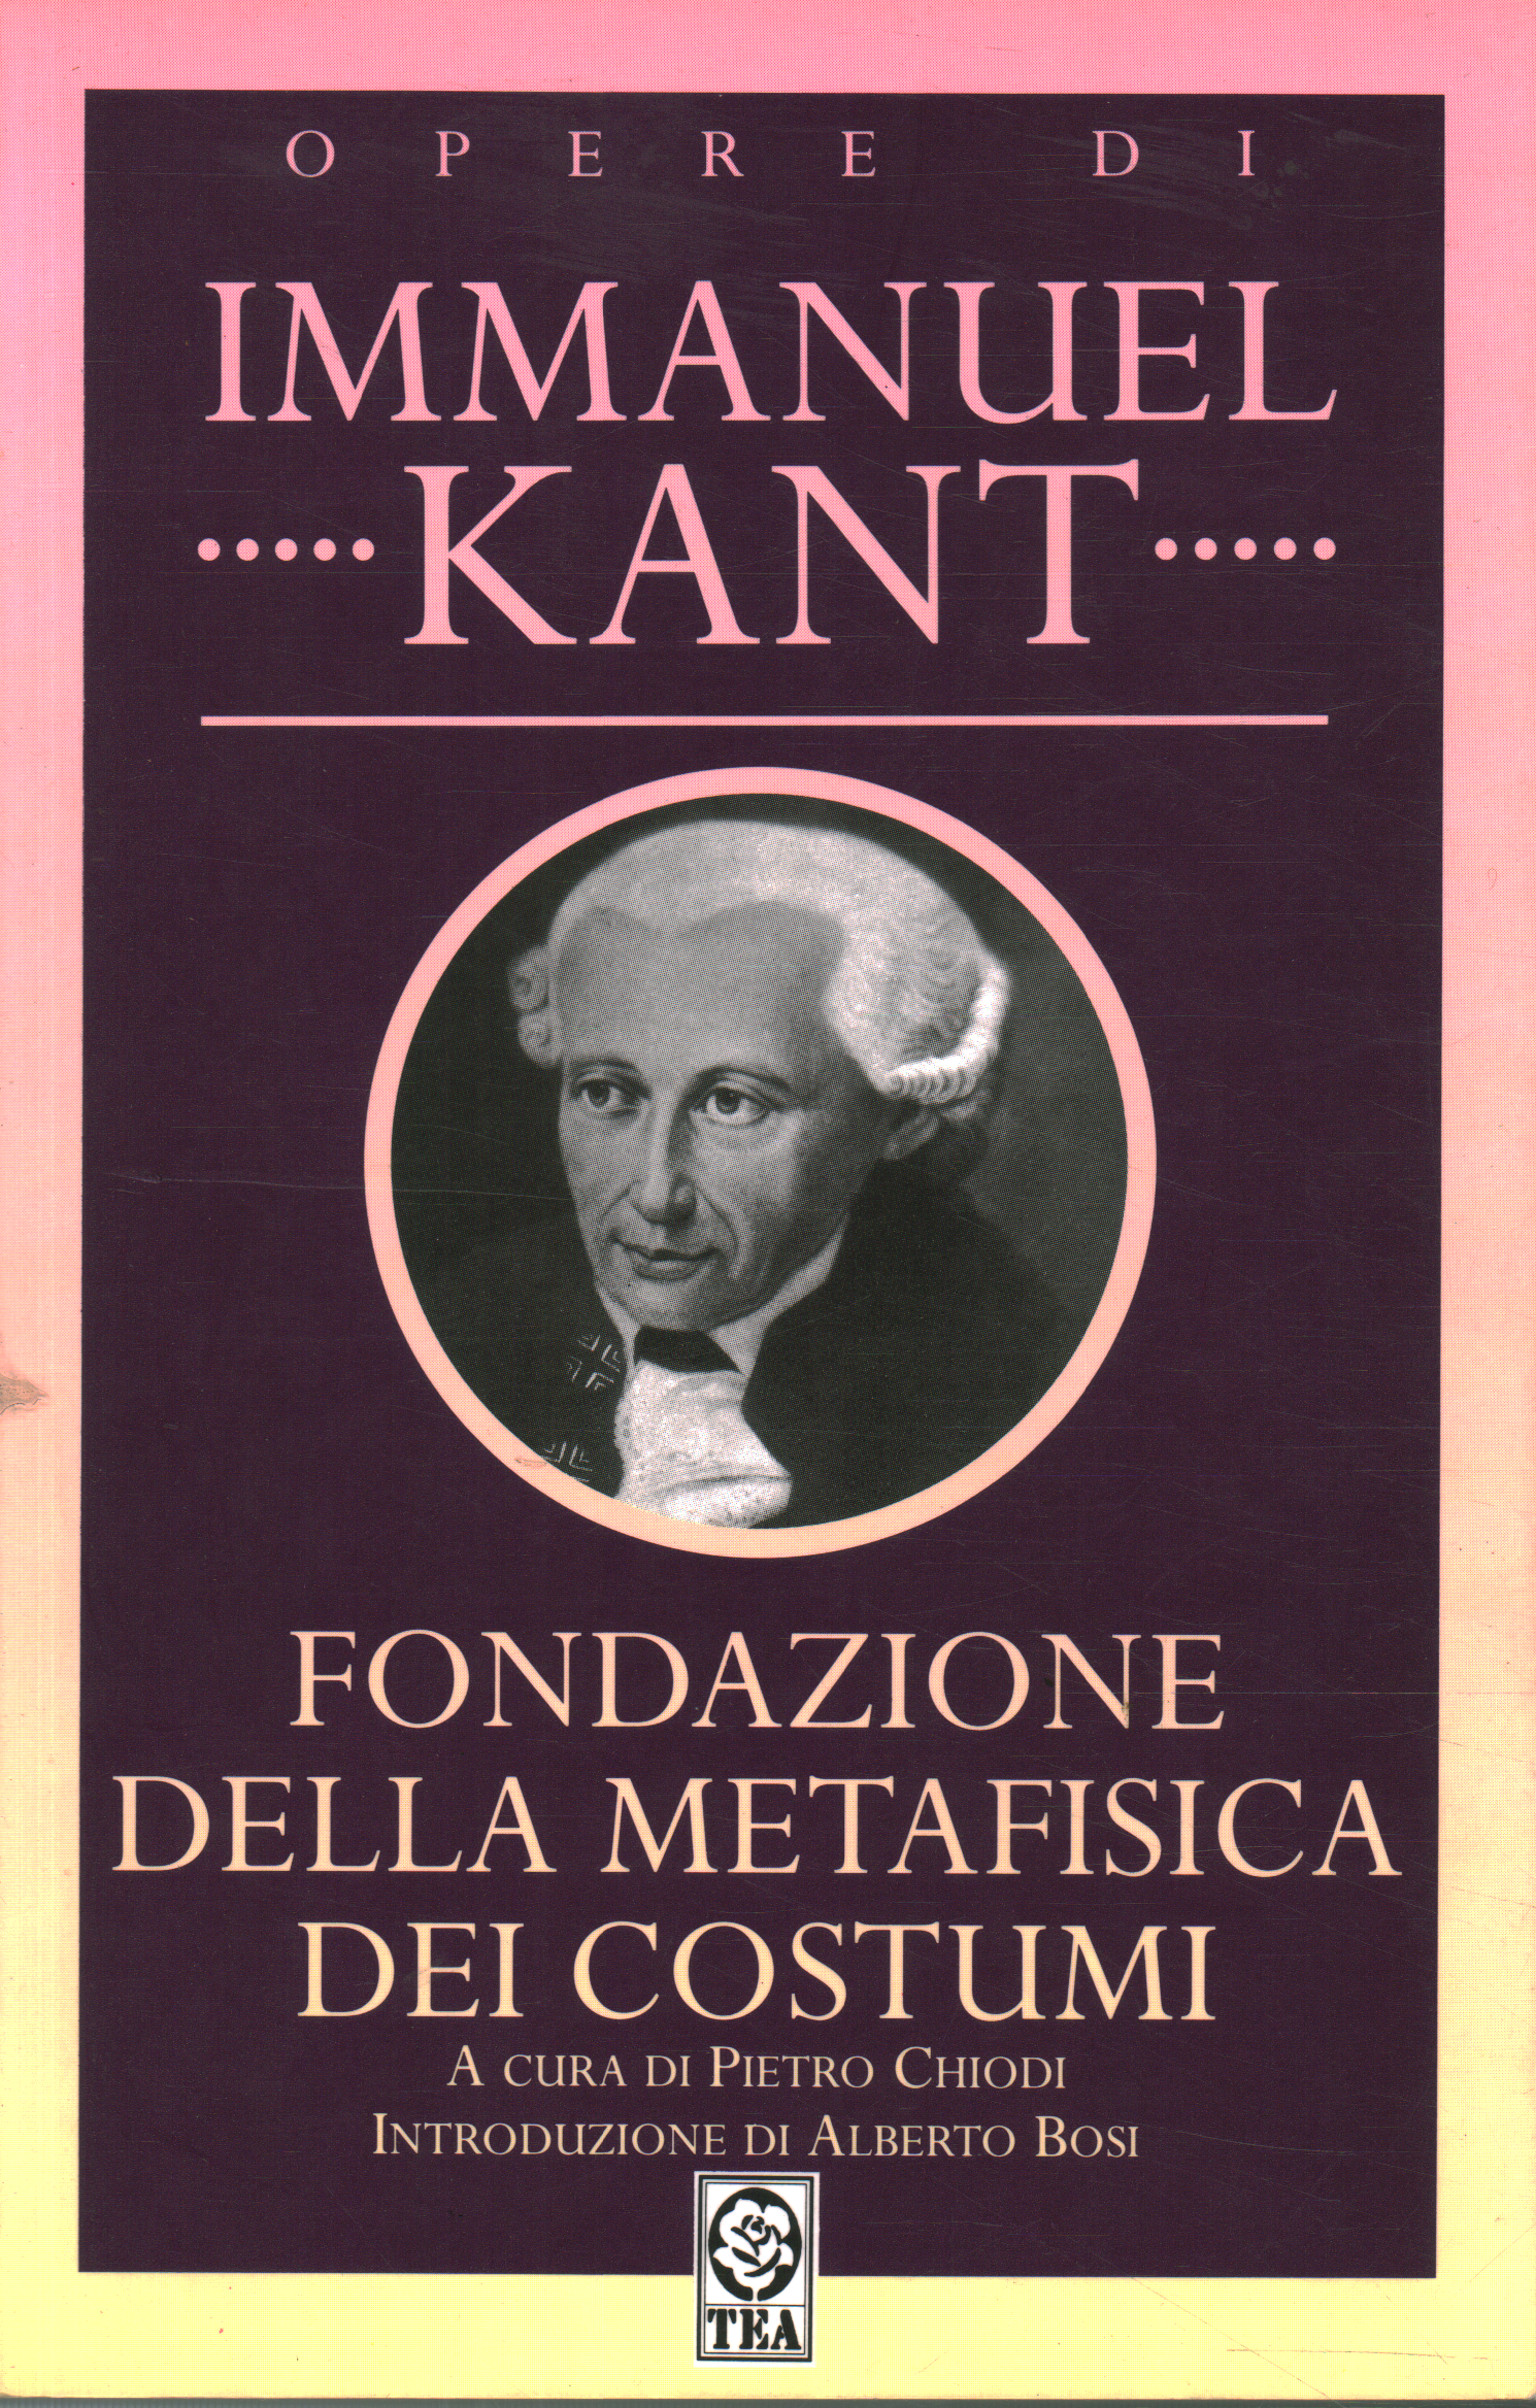 Fondazione della metafisica dei costumi, Immanuel Kant